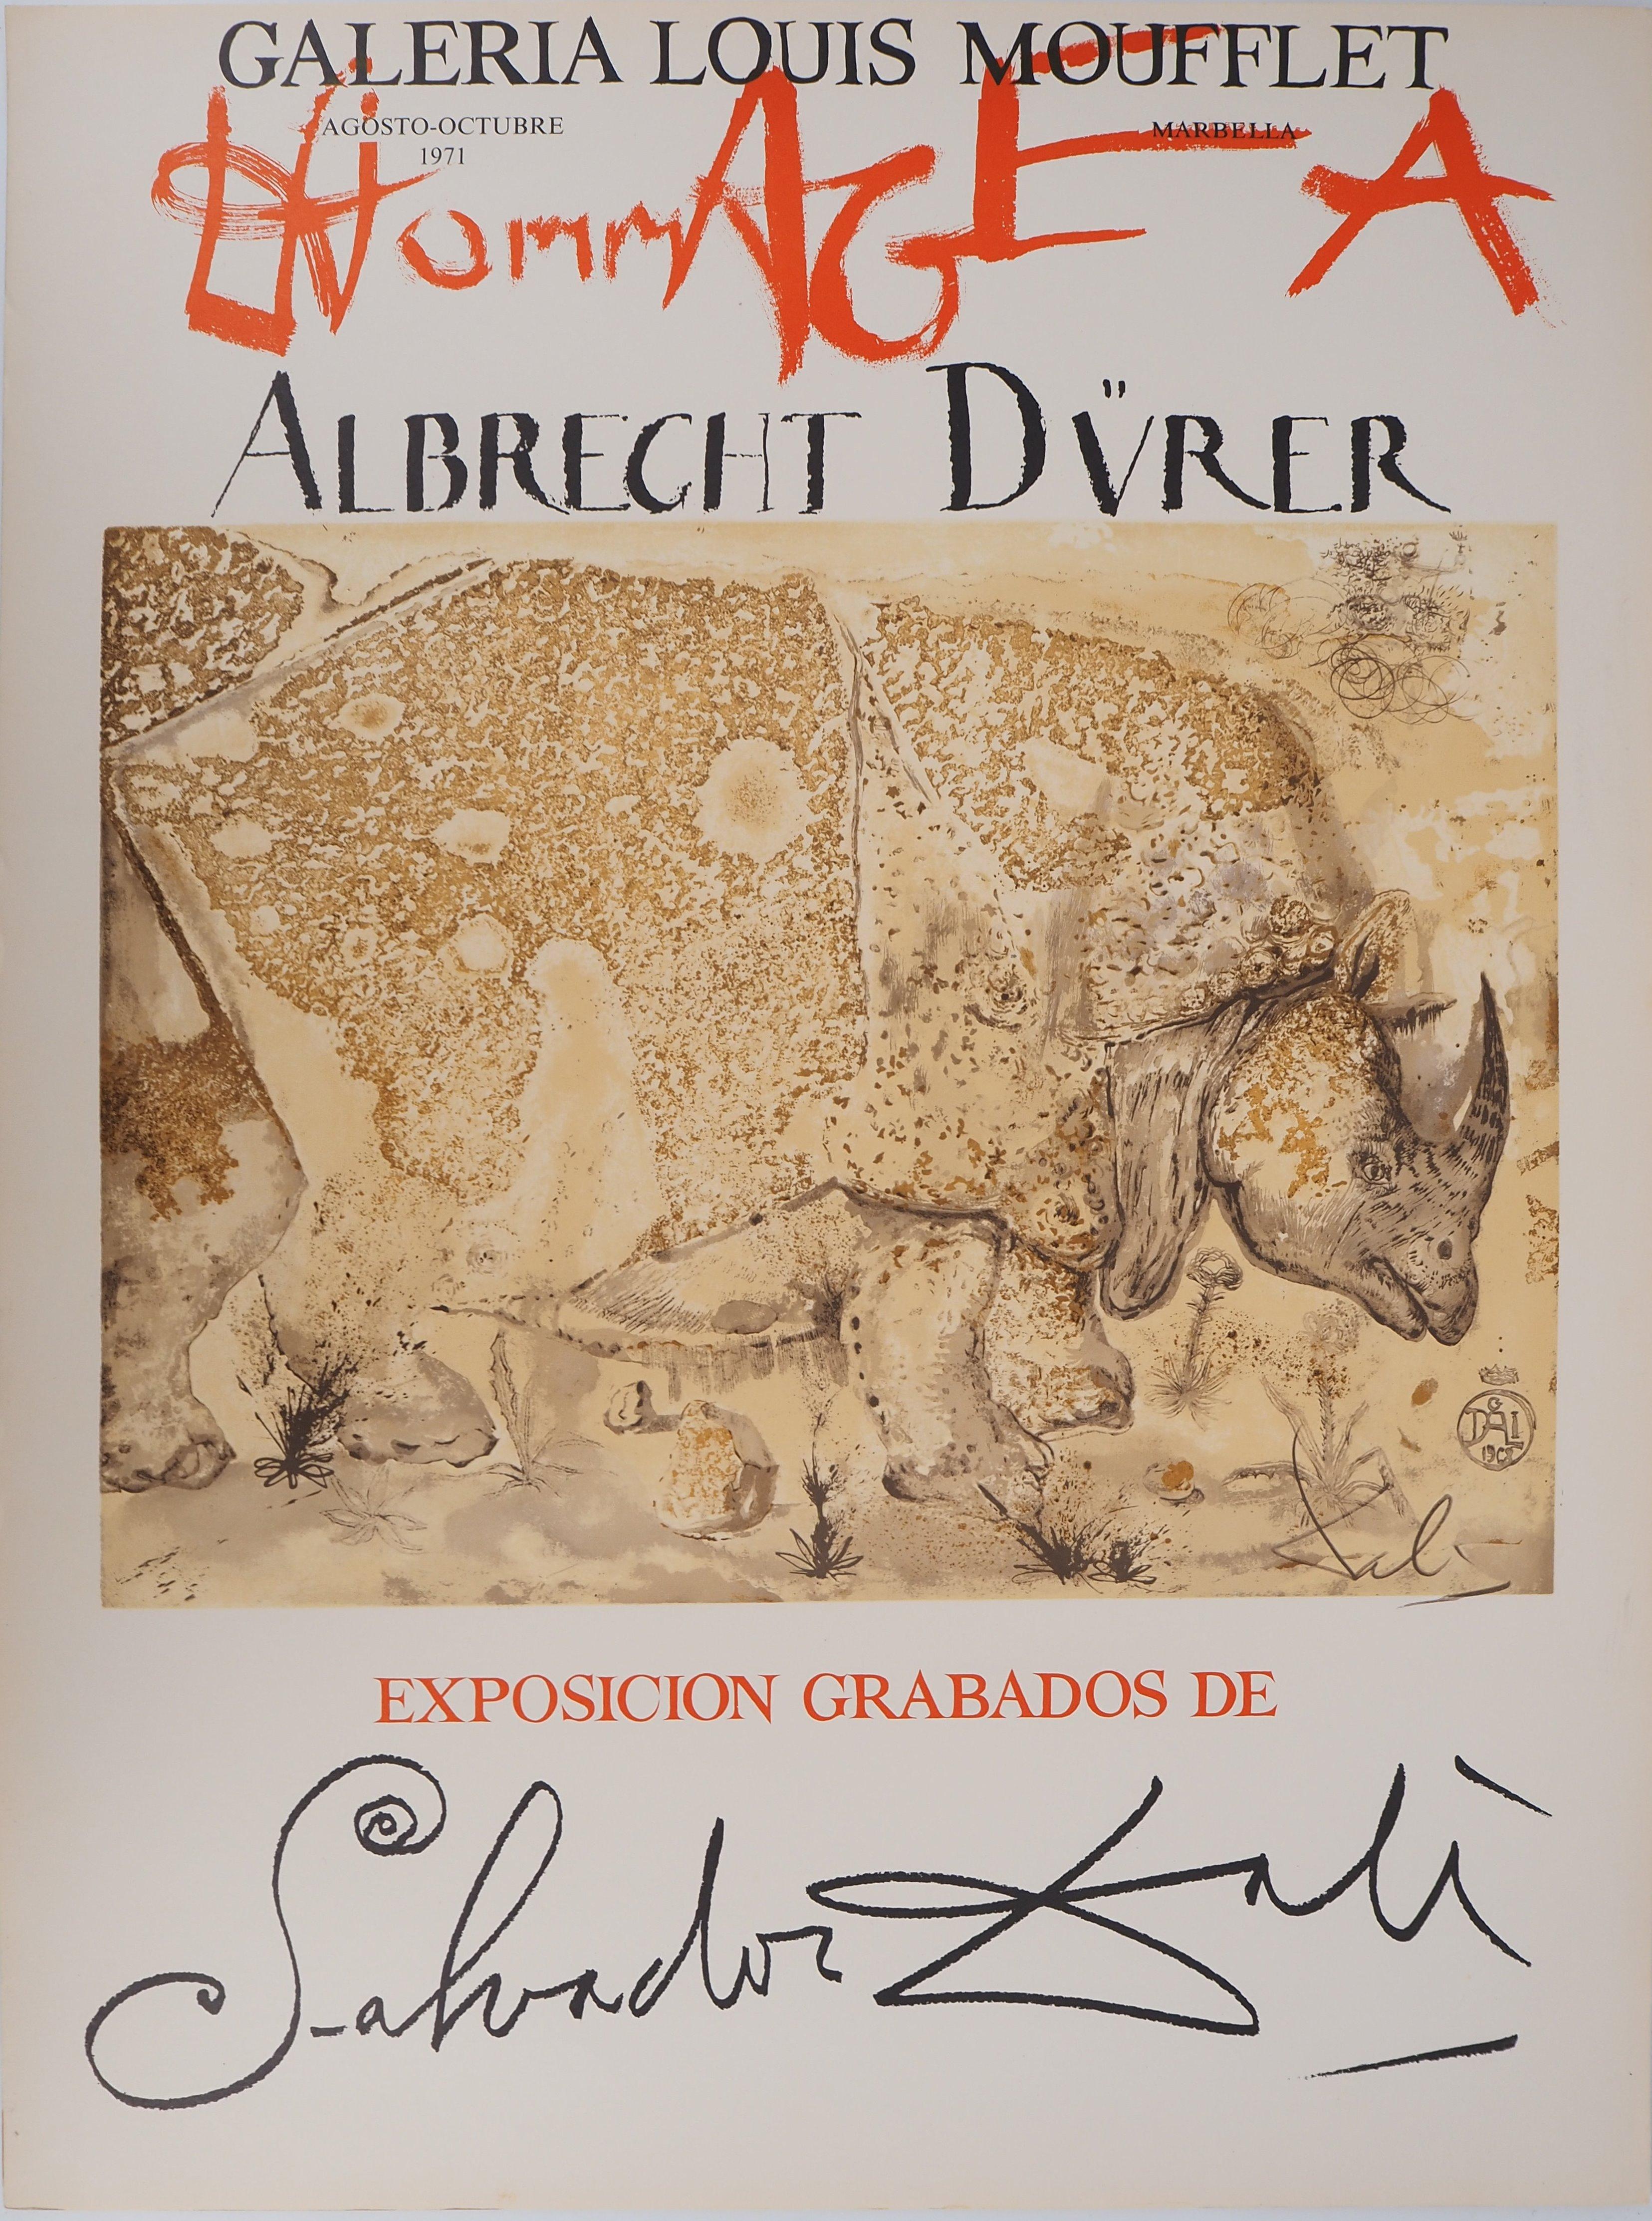 Salvador Dalí Animal Print - Rhinoceros, Tribute to Albrecht DURER - Original lithograph poster (Gaspar #1503